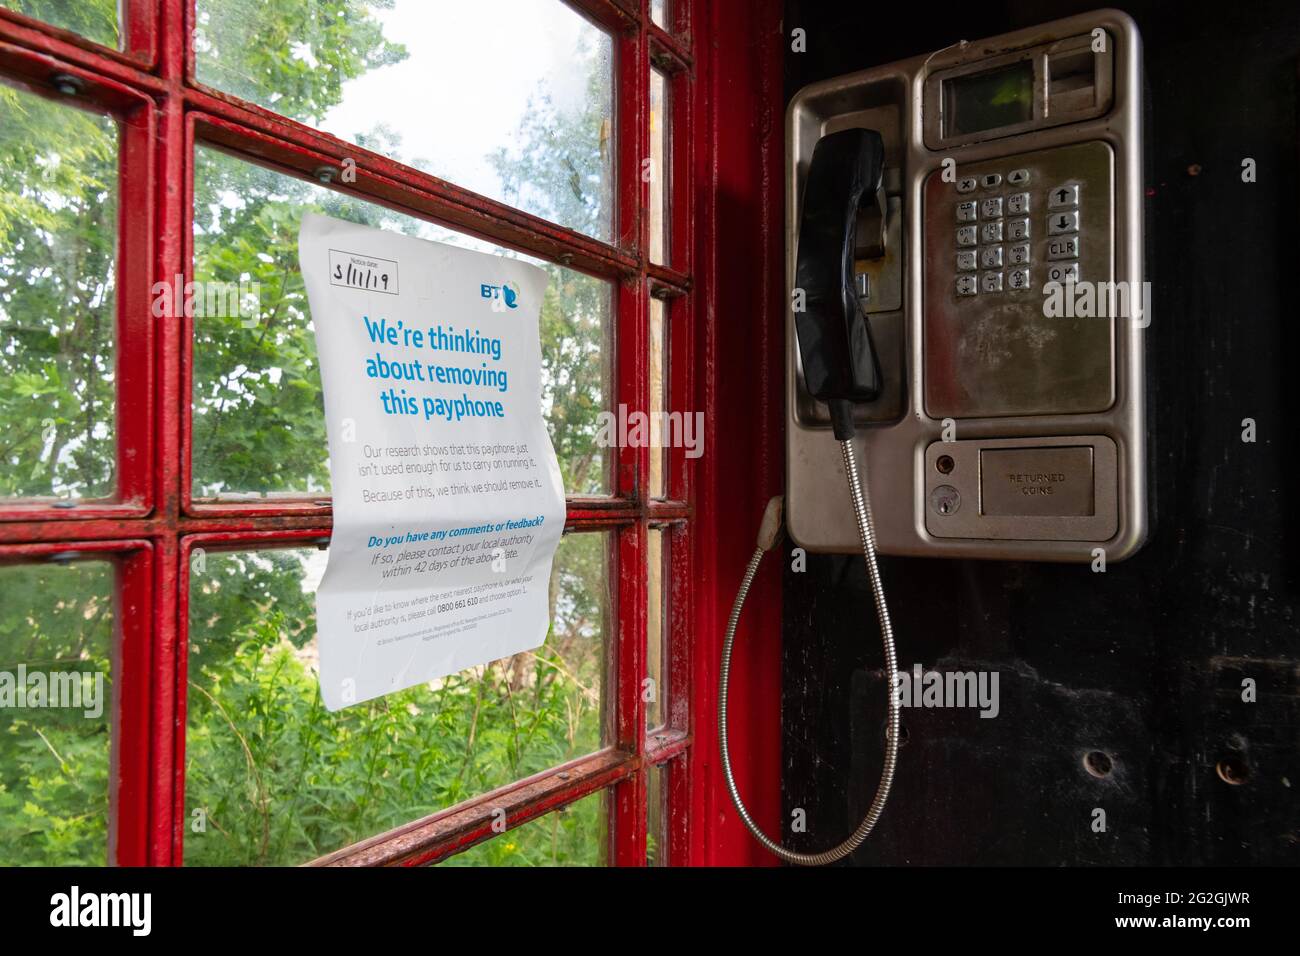 'Estamos pensando en eliminar este teléfono público' en el interior de la caja de teléfono bt roja tradicional, Strachur, Argyll y Bute, Escocia, Reino Unido Foto de stock